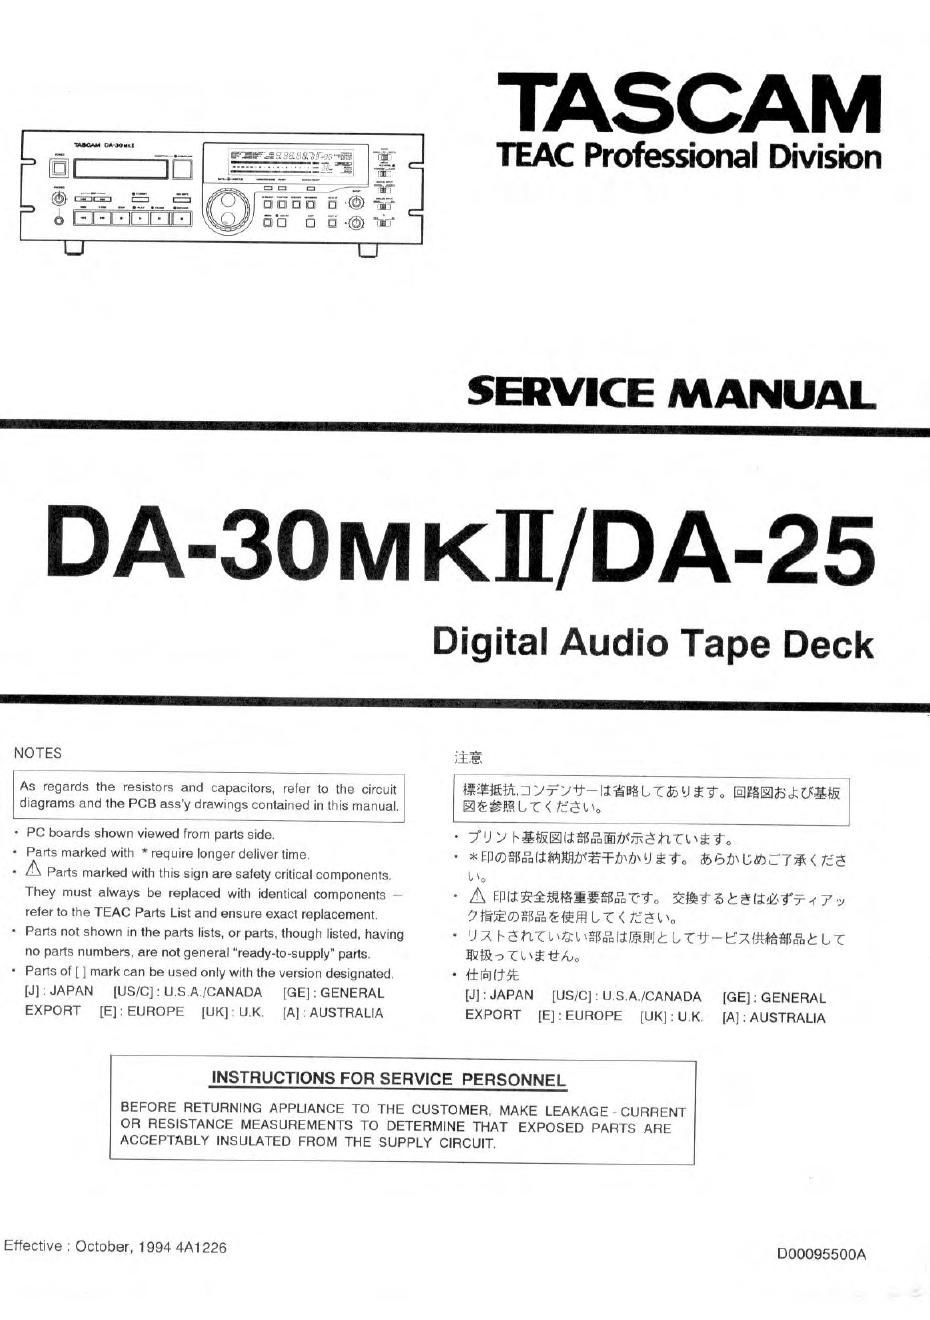 Tascam DA 25 DA 30 Mk2 Service Manual